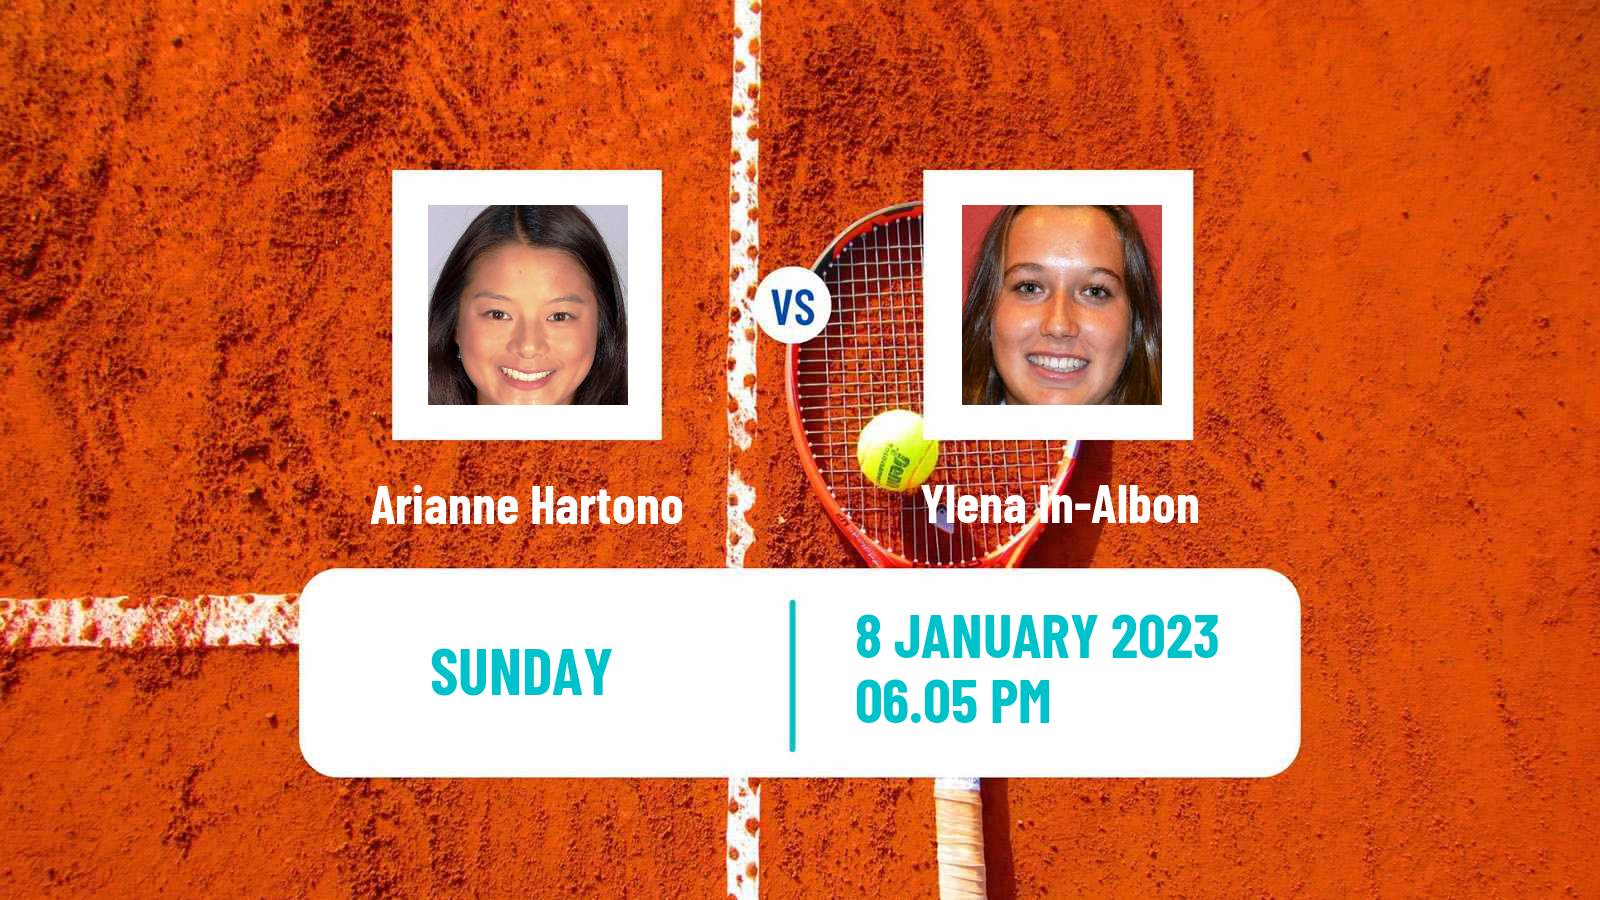 Tennis WTA Australian Open Arianne Hartono - Ylena In-Albon